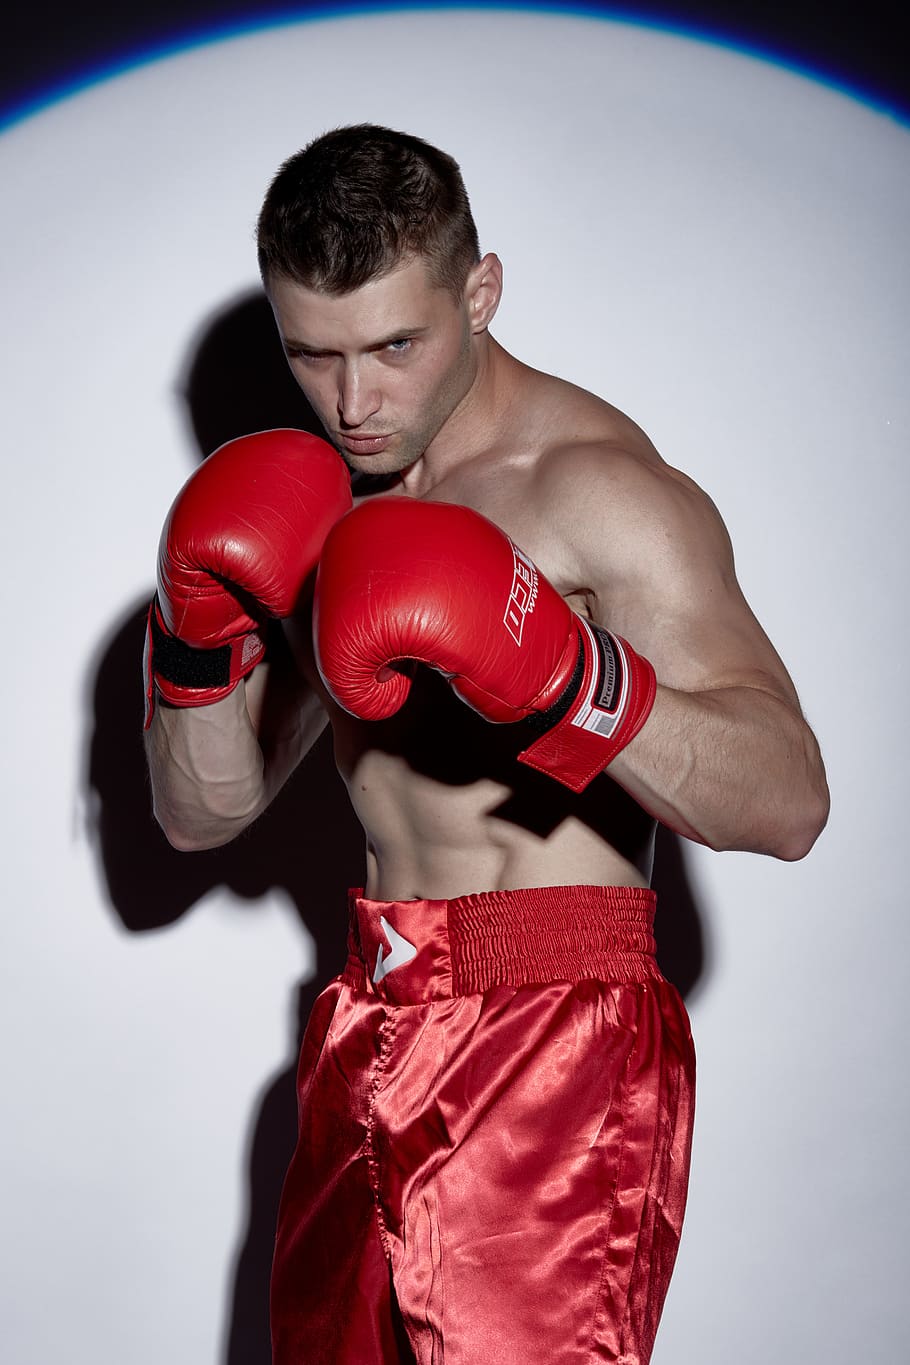 boxe, kickboxing, modelo, homens, luta, vermelho, foto, novo, pugilista, batalha